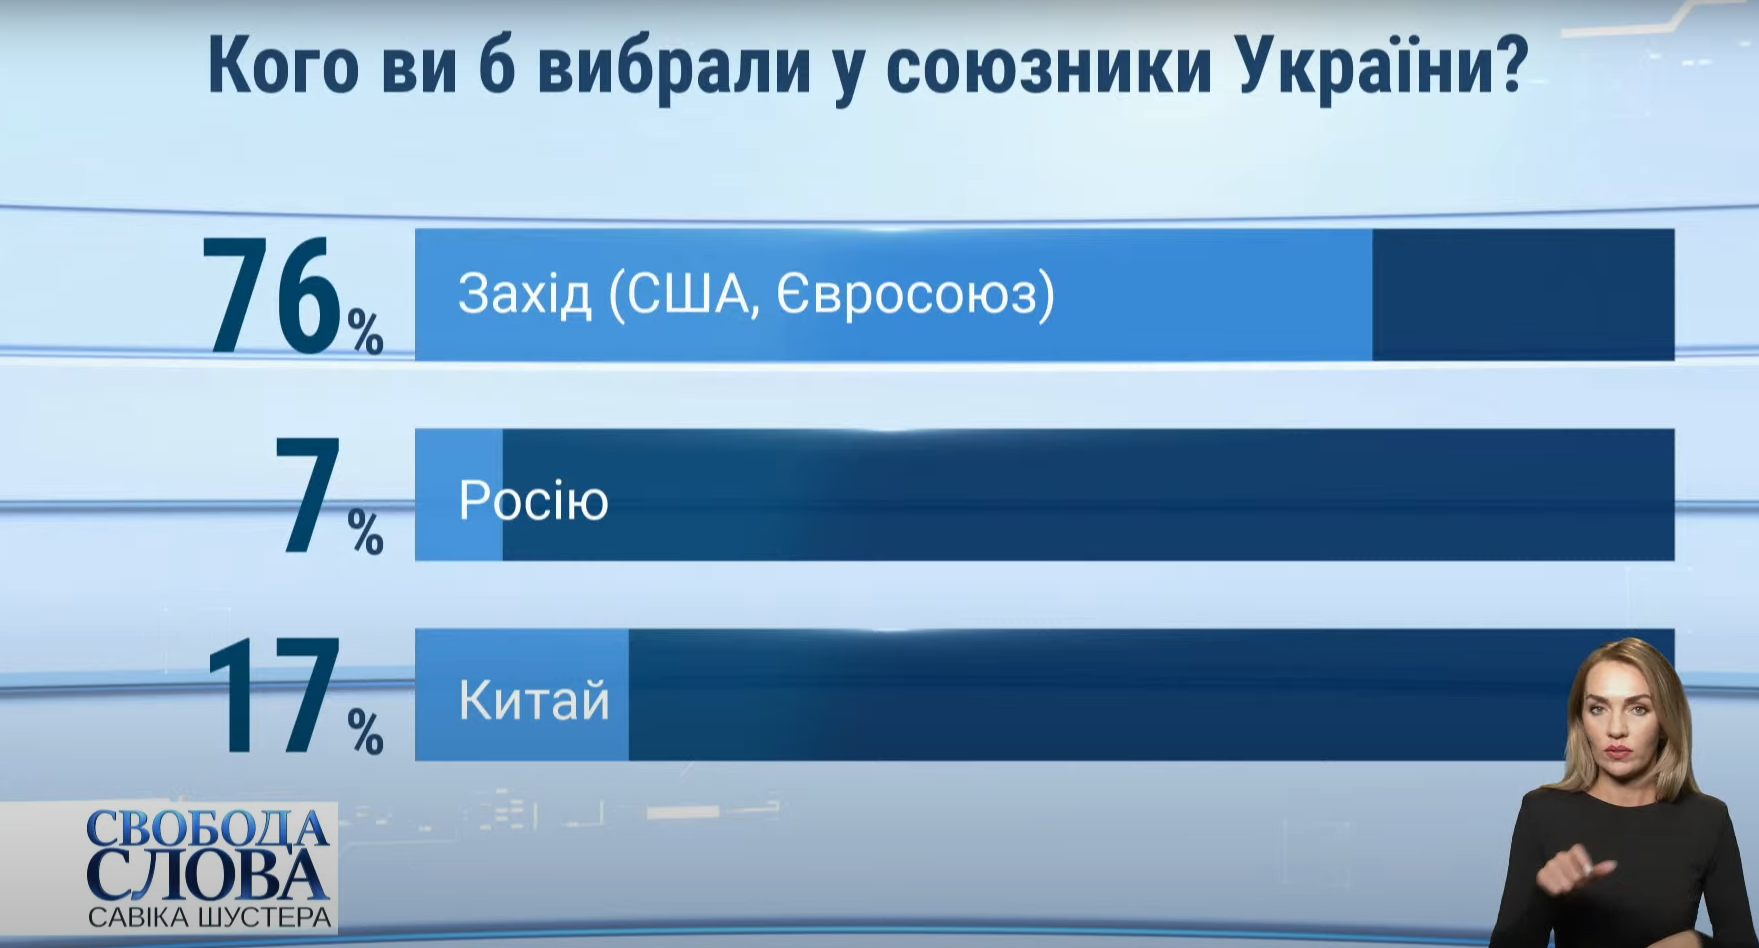 Результати опитування про найкращого союзника для України.